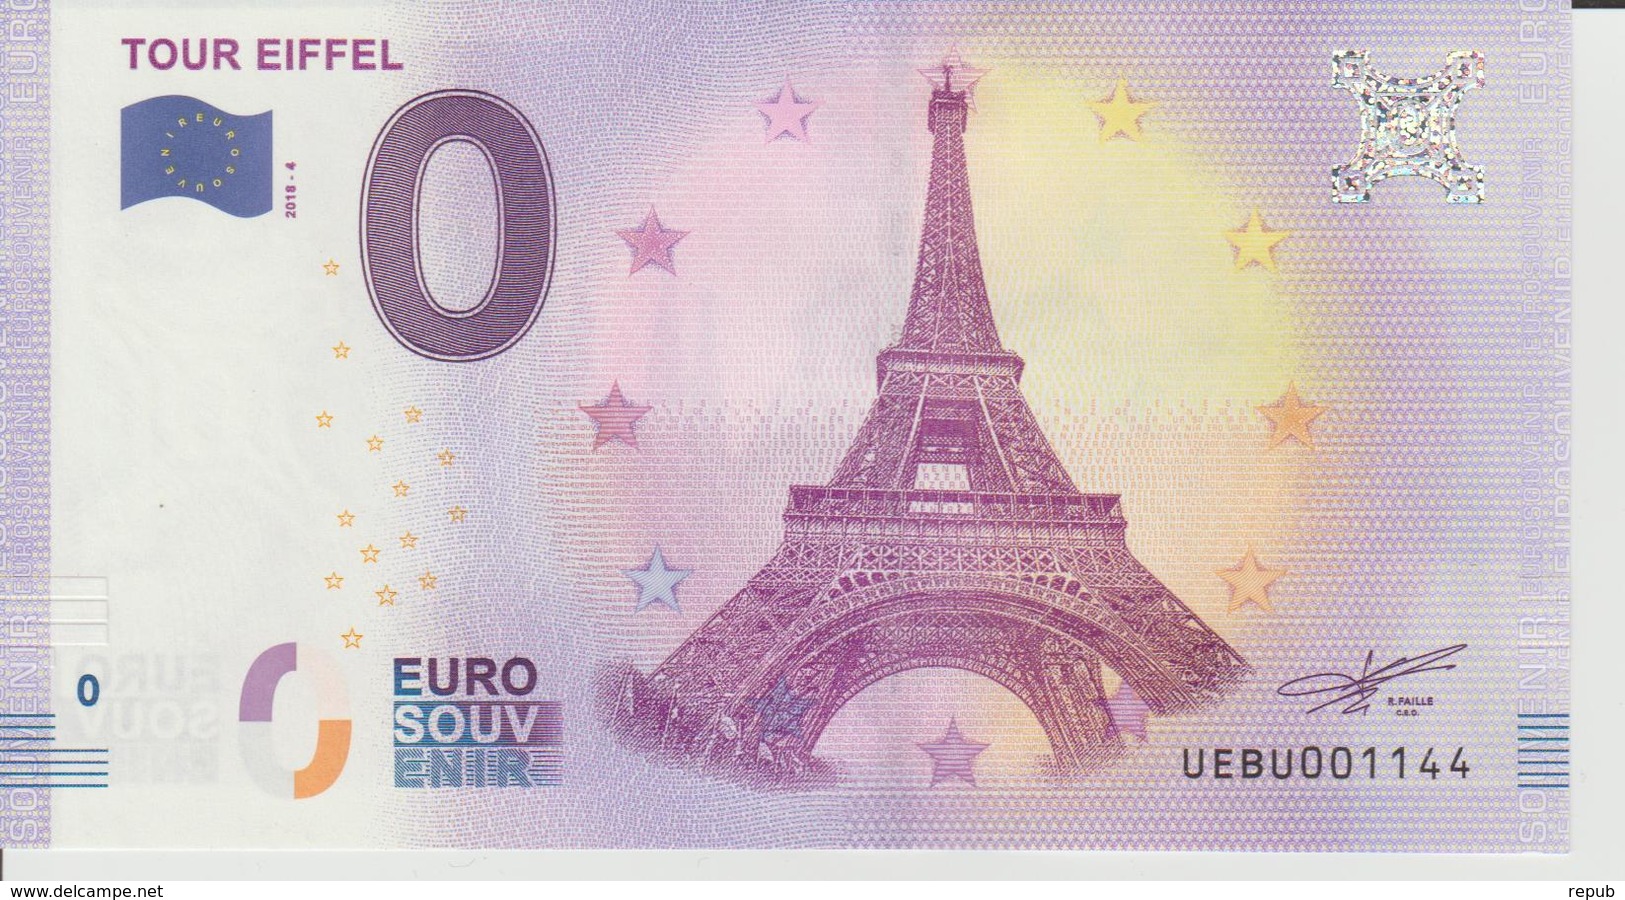 Billet Touristique 0 Euro Souvenir France 75 Tour Eiffel 2018-4 N°UEBU001144 - Essais Privés / Non-officiels